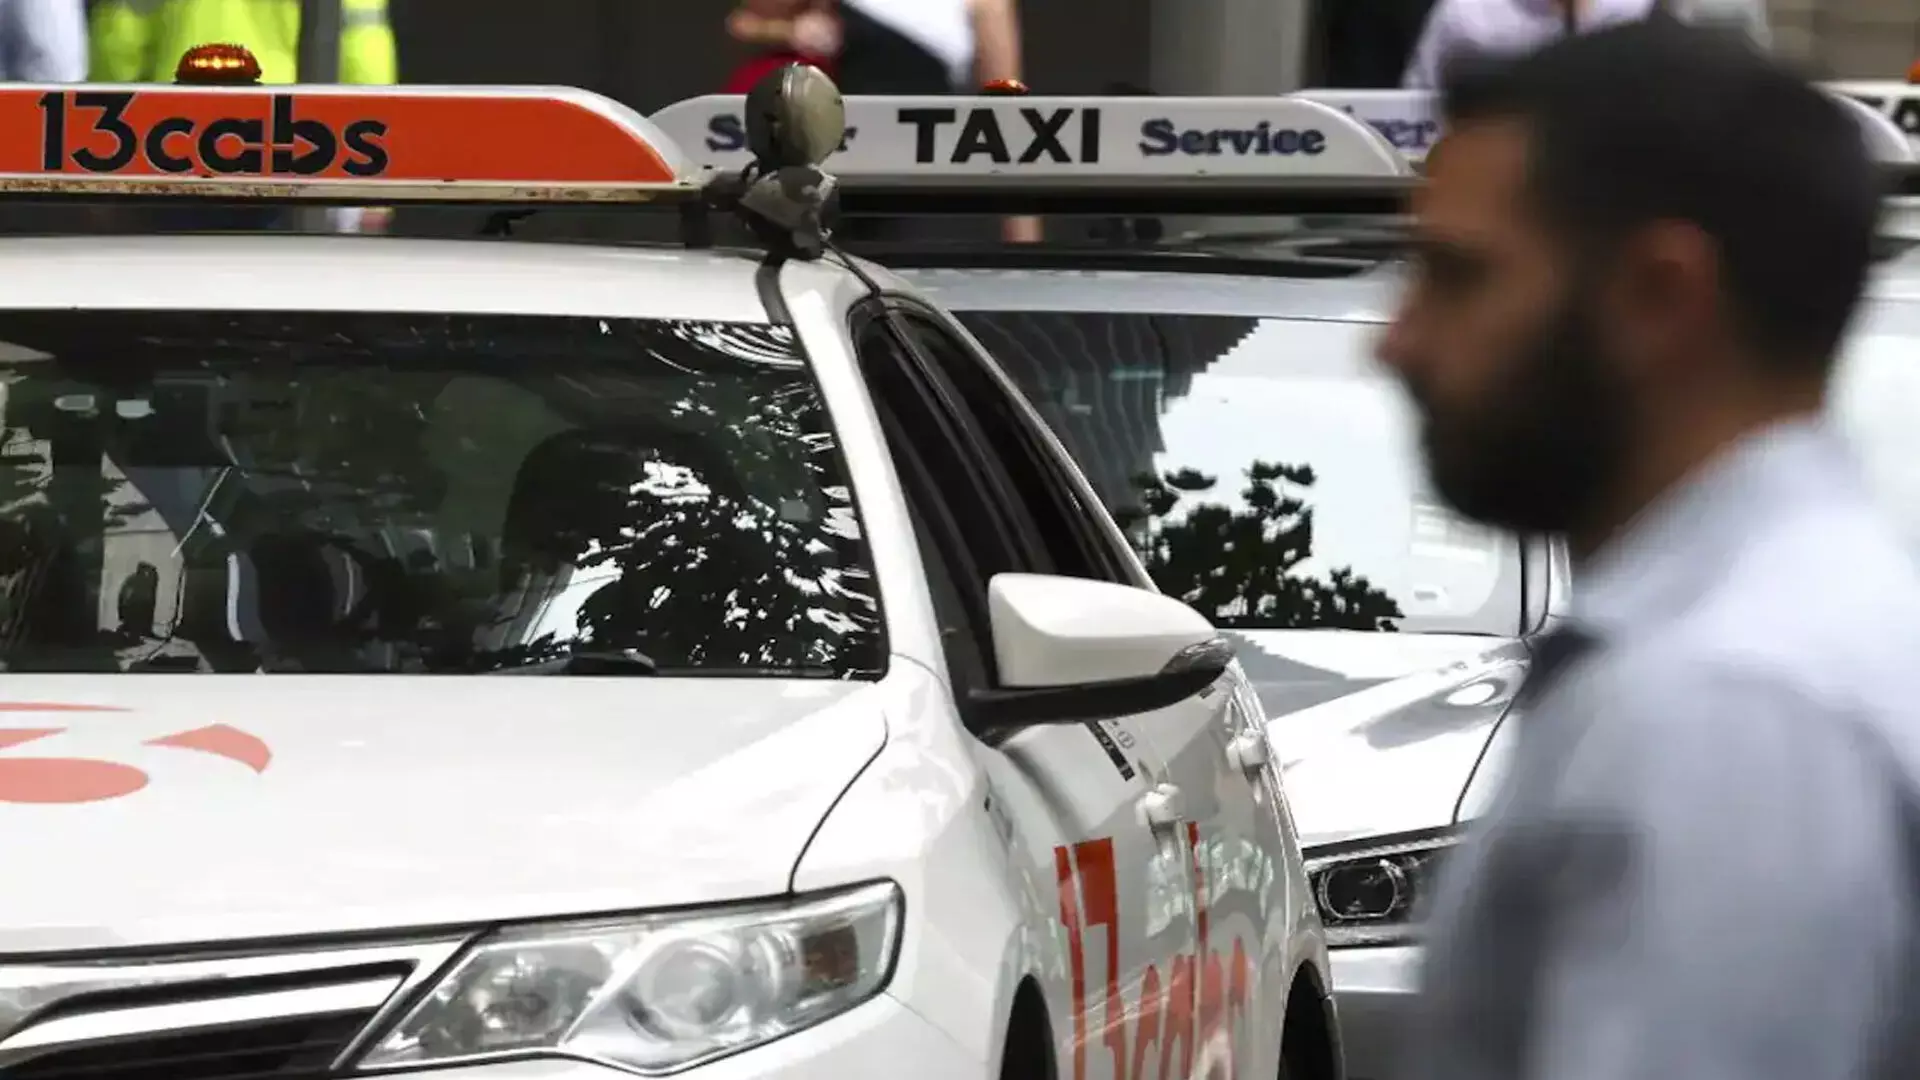 उबर ऑस्ट्रेलियाई टैक्सी ड्राइवरों को 178 मिलियन डॉलर का देगा मुआवजा ,जाने वजह